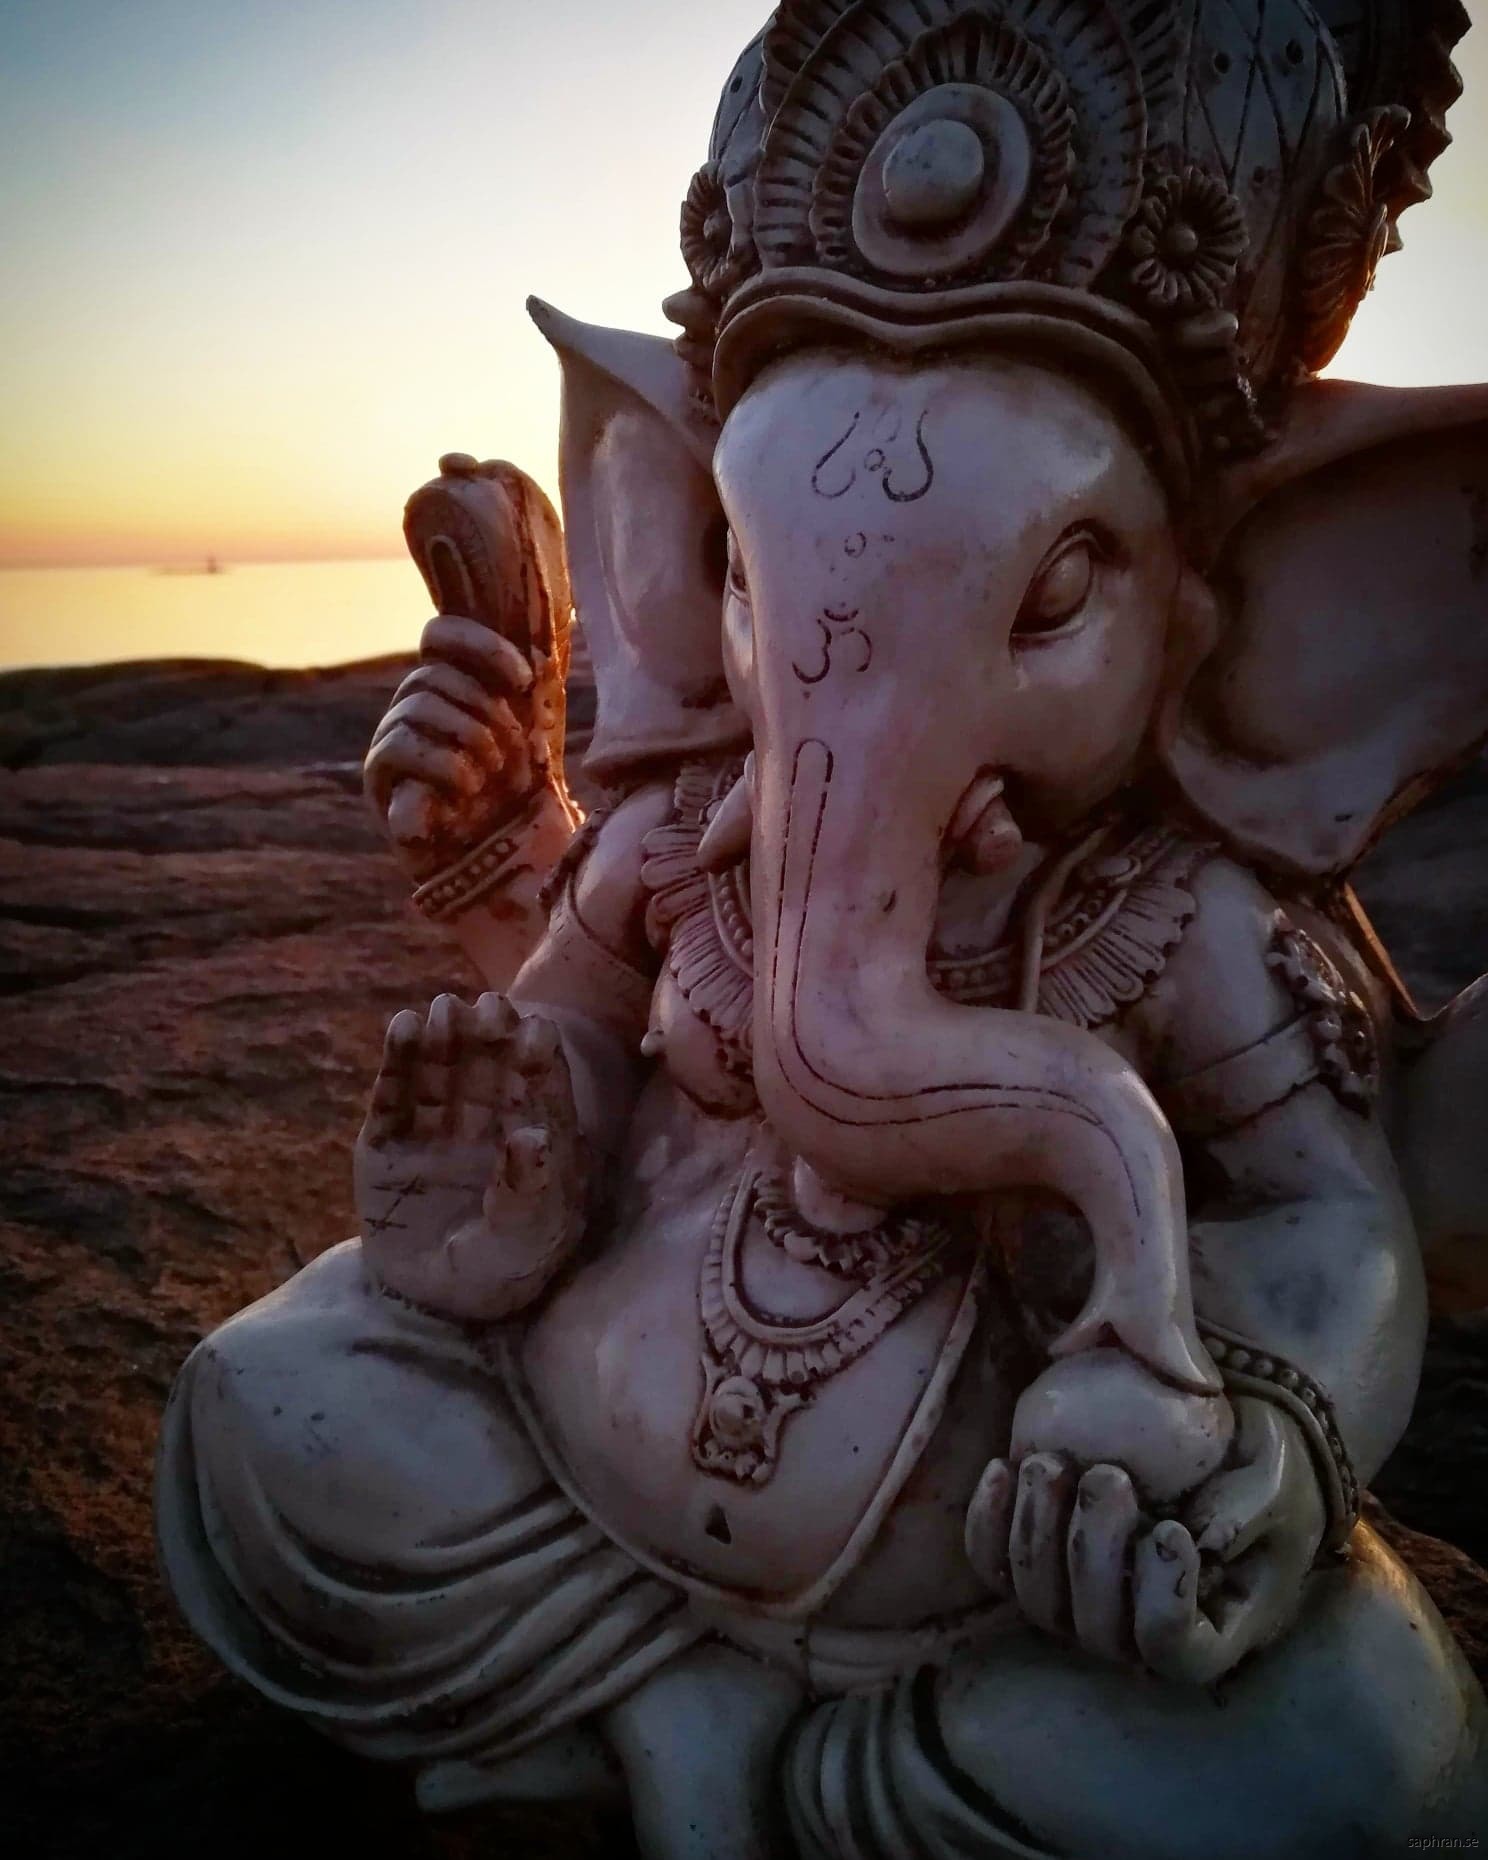 Unik staty föreställande Ganesha